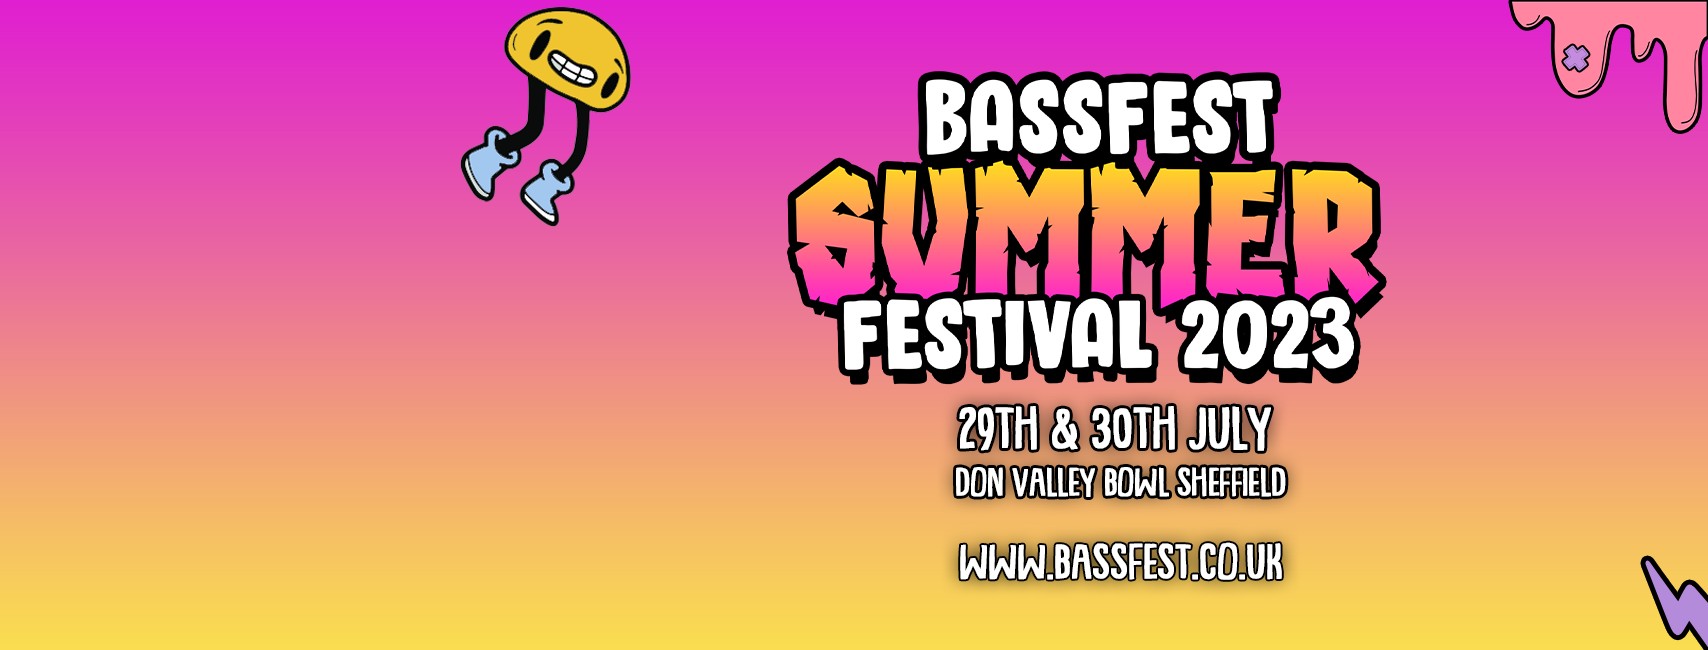 Bassfest Summer Festival 2023